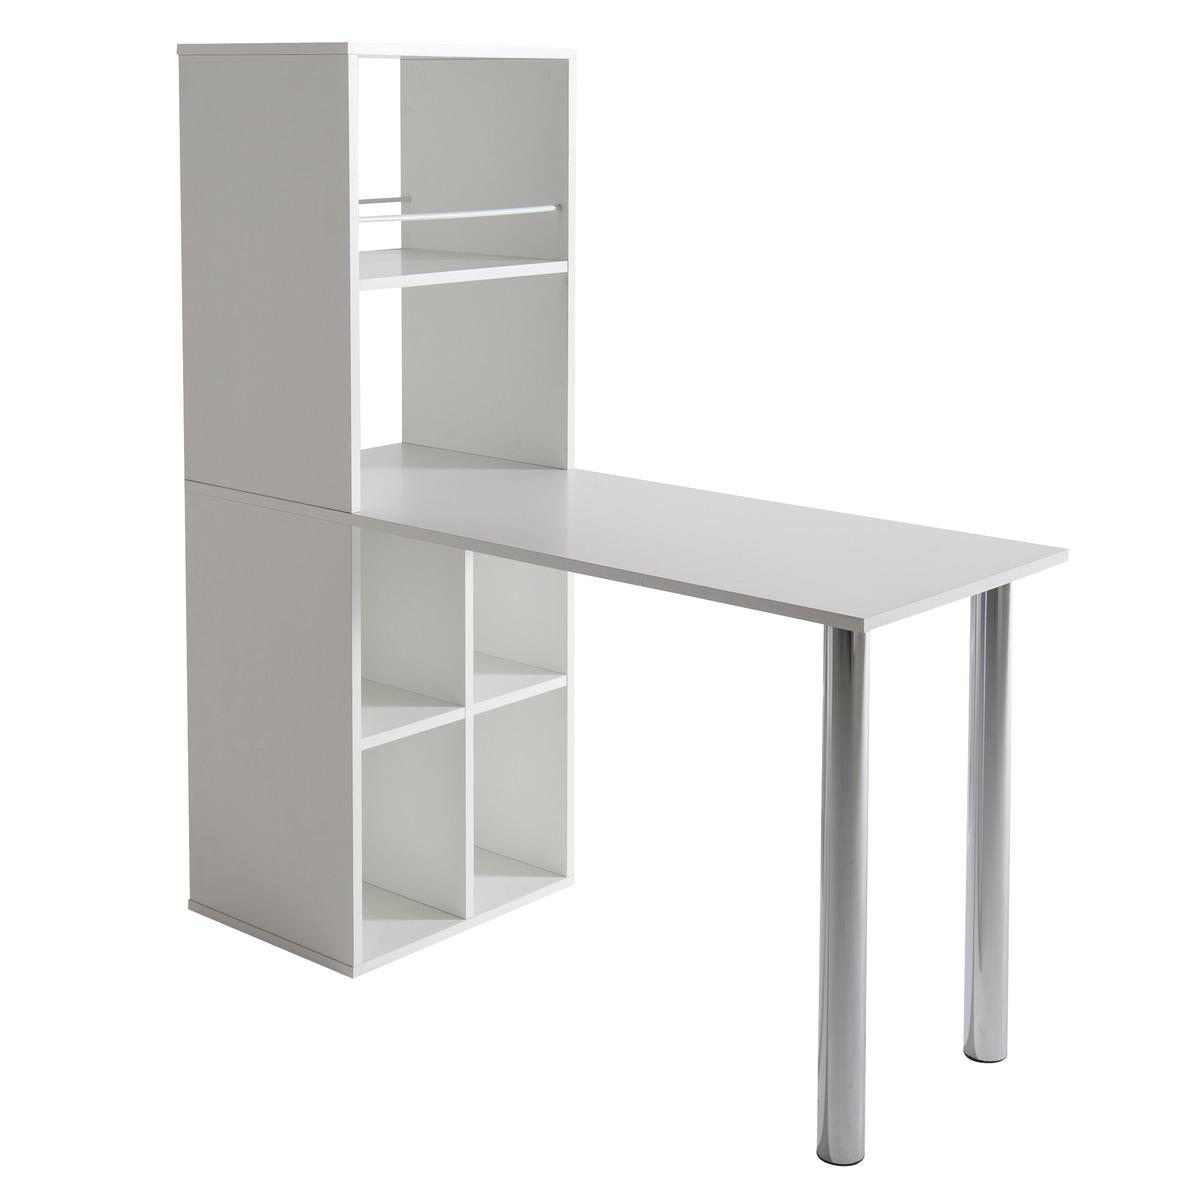 Meuble de séparation avec table + rangement - 130 x 50 x H 142 cm - Blanc